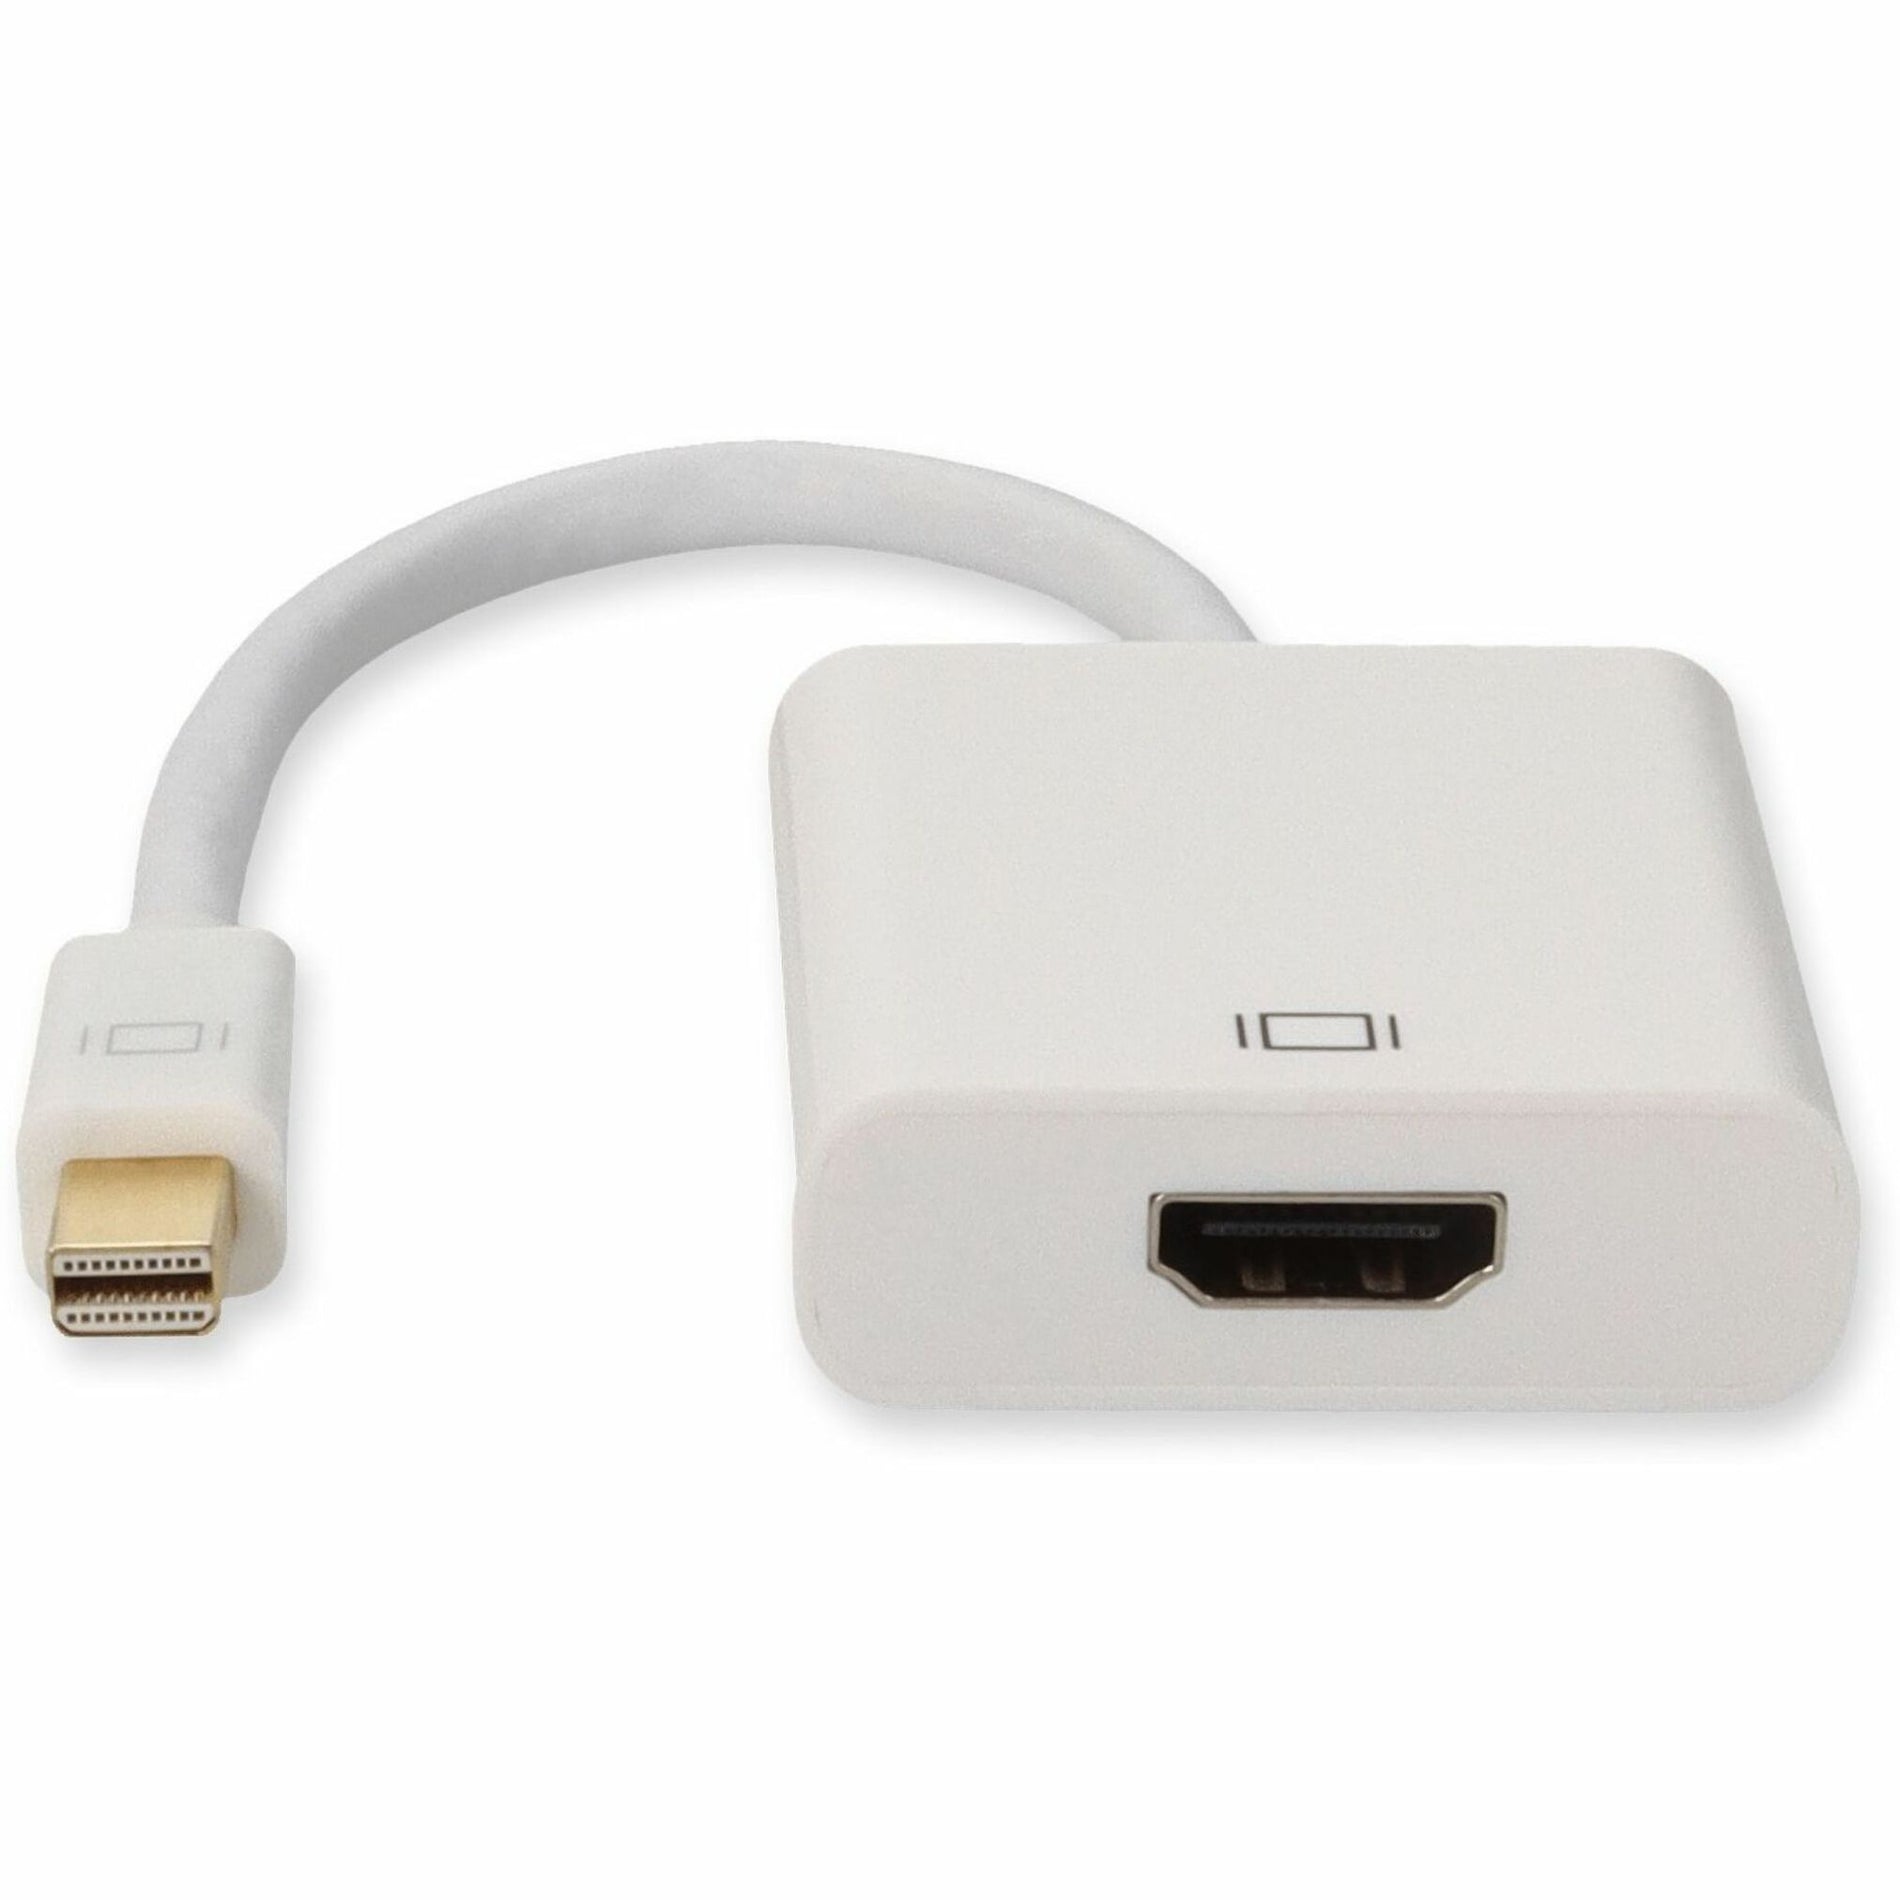 Cable Adaptador Mini-DisplayPort a HDMI - Macho a Hembra 3 Años de Garantía Estados Unidos Marca: MDISPLAYPORT2HDMIW traducir marca: MDISPLAYPORT2HDMIW